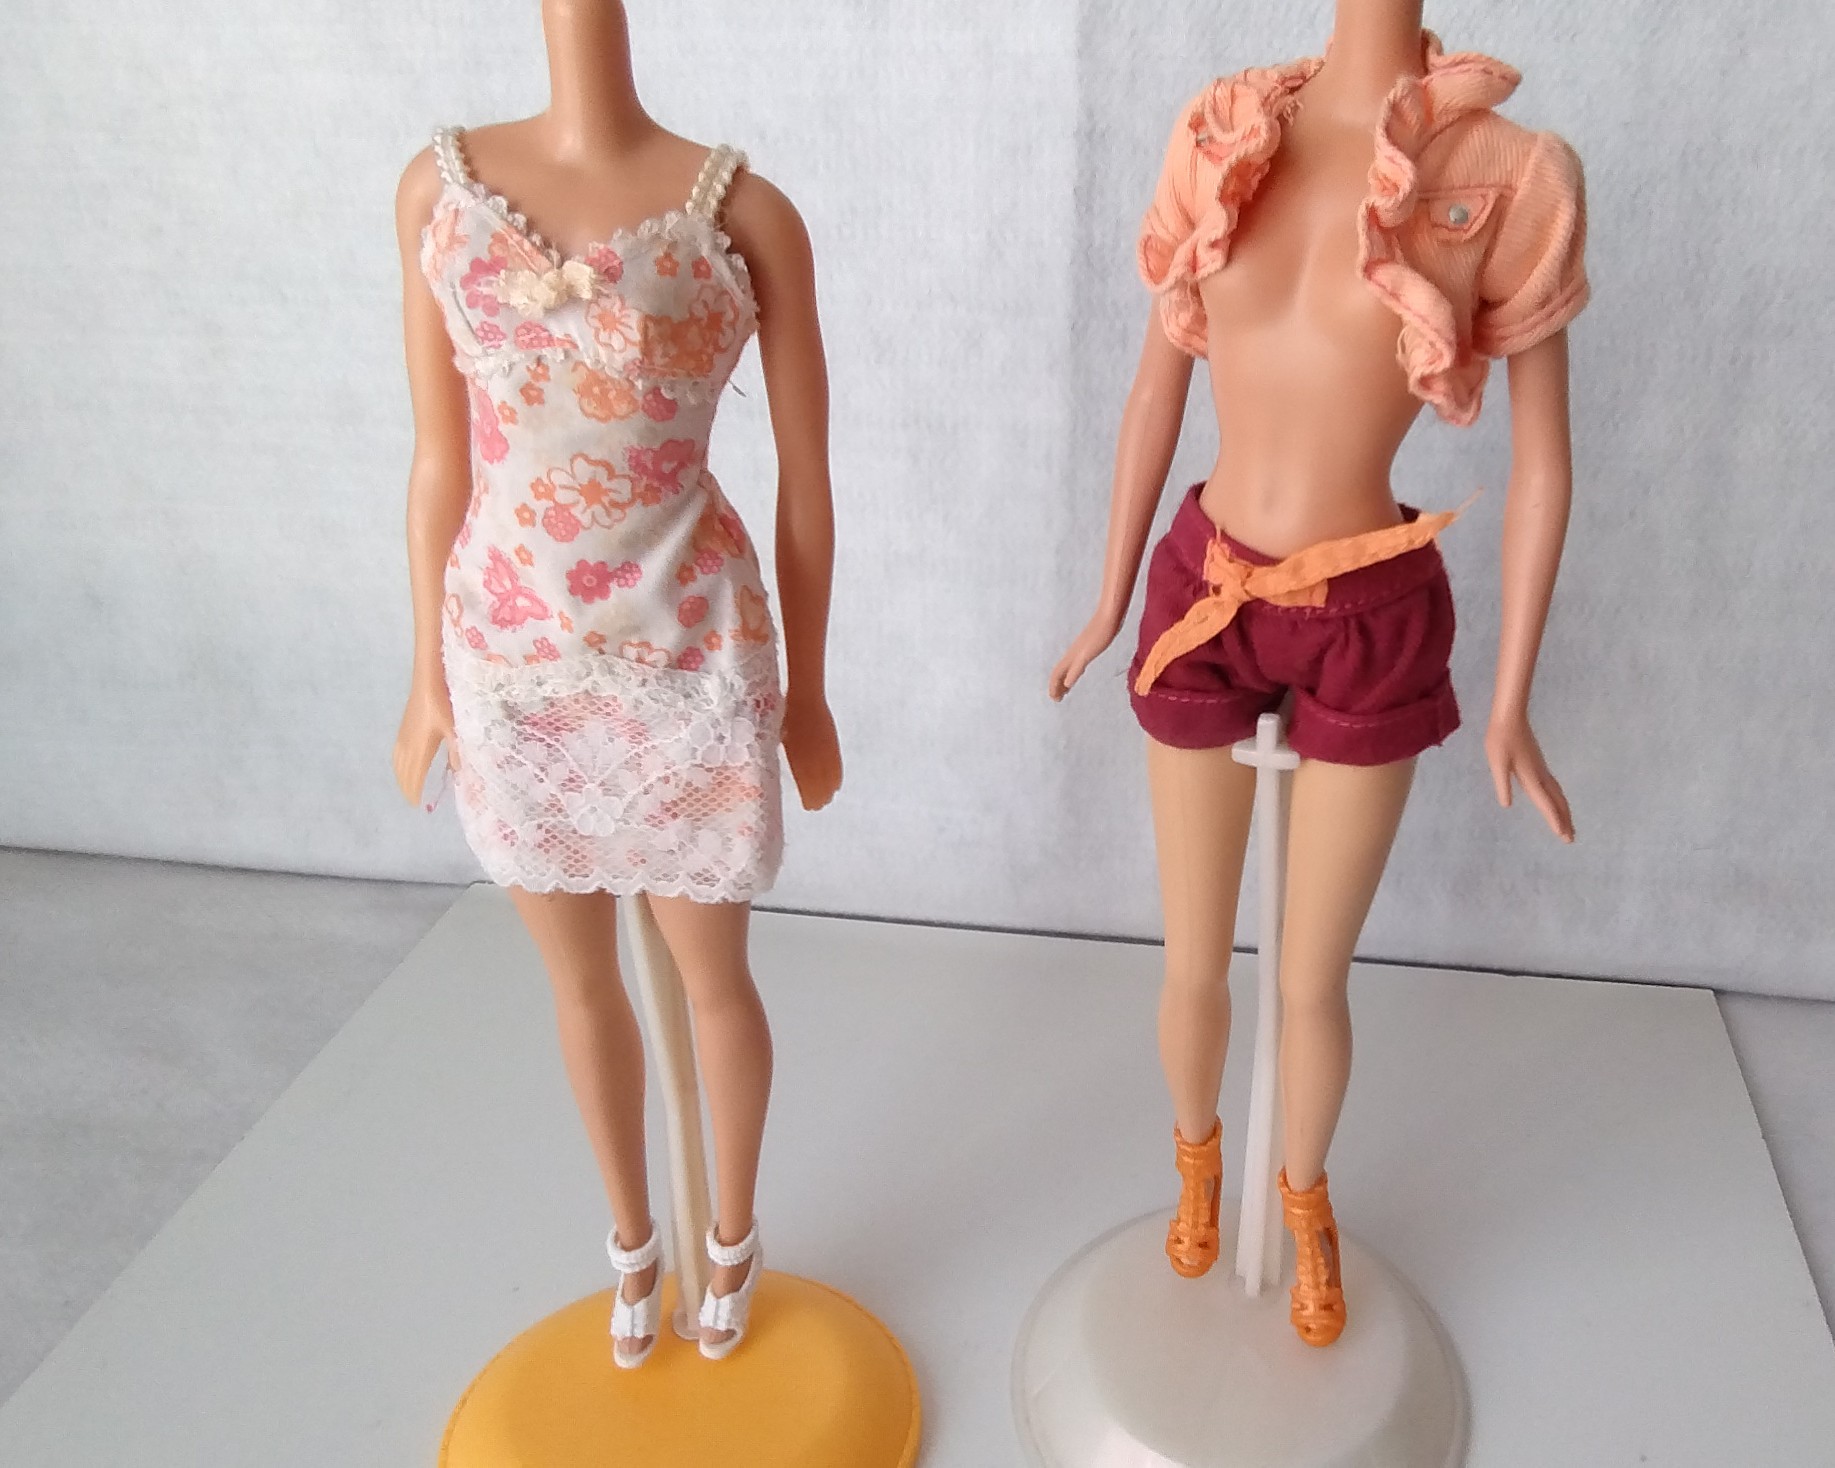 Vestidos Botas e chapéu da Barbie fashion cartela - Taffy Shop - Brechó de  brinquedos